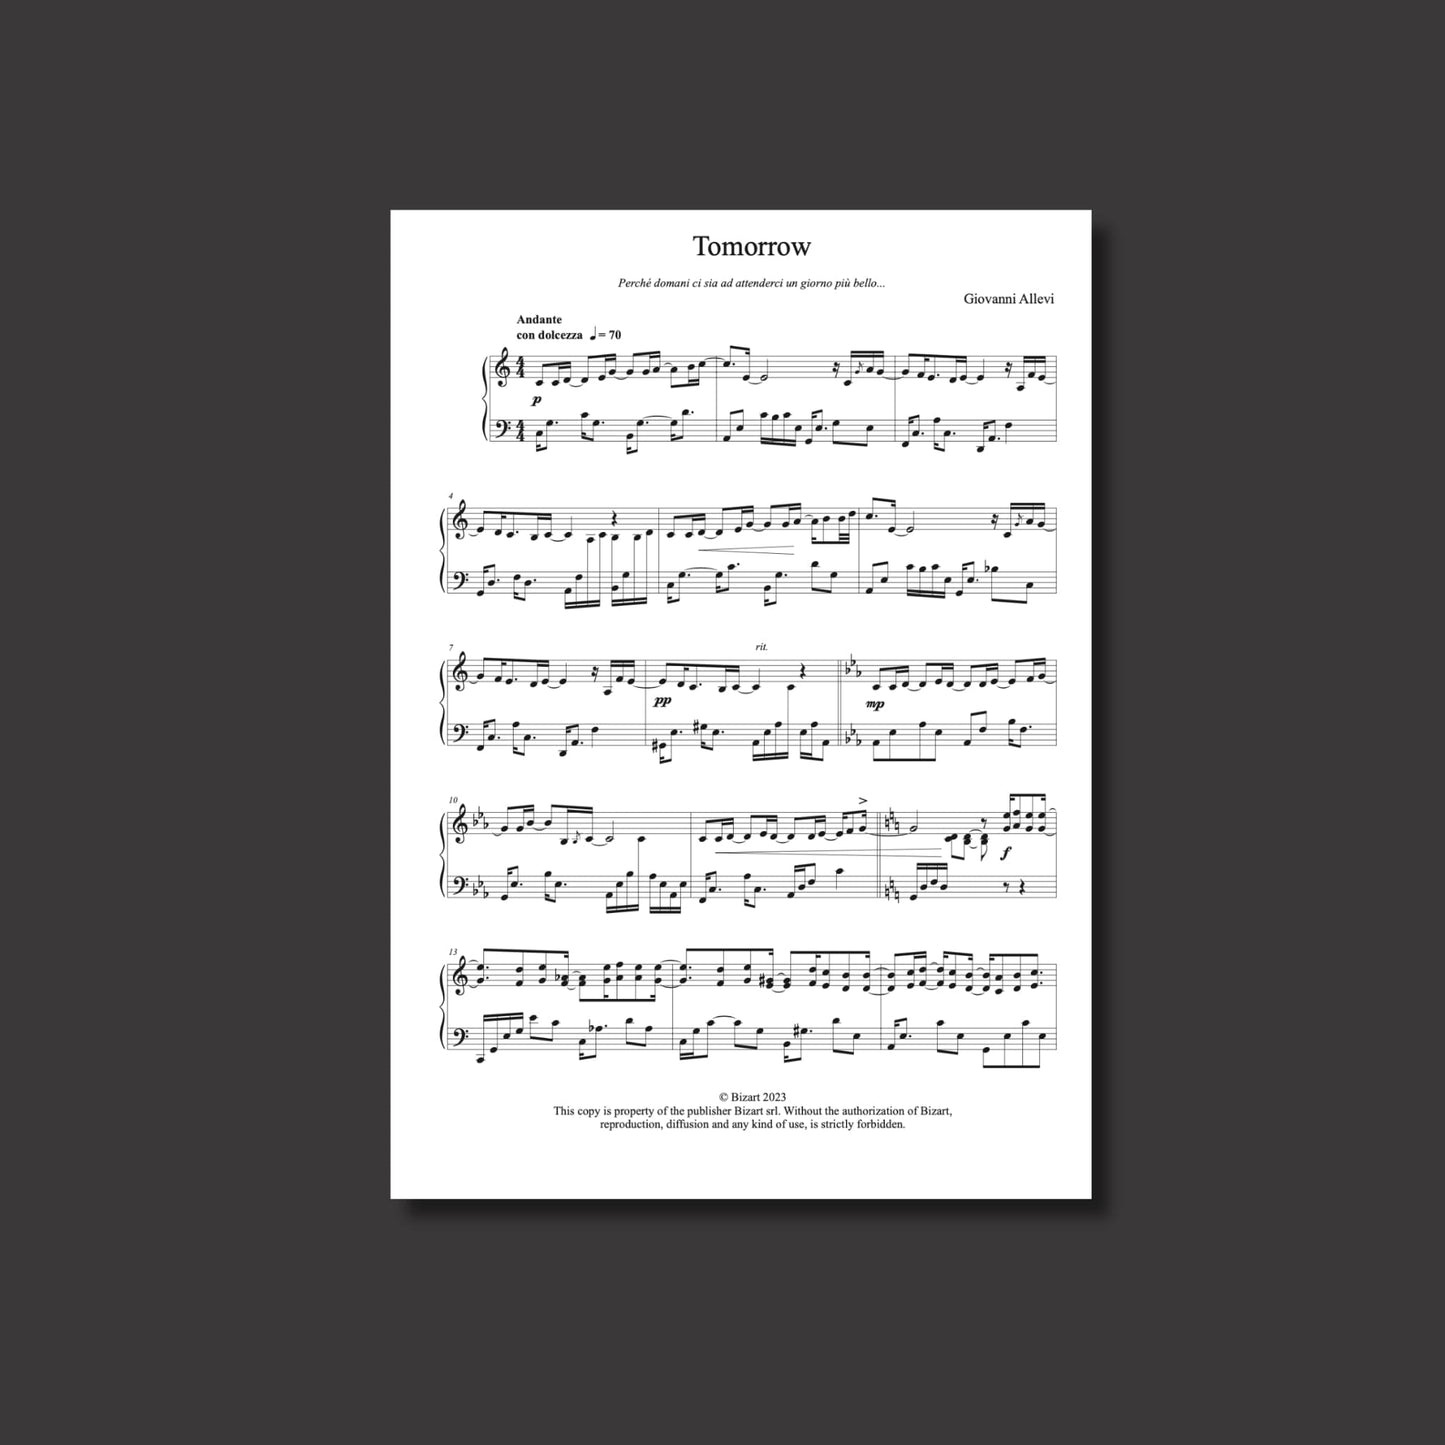 TOMORROW del compositore GIOVANNI ALLEVI - spartito digitale per pianoforte solo